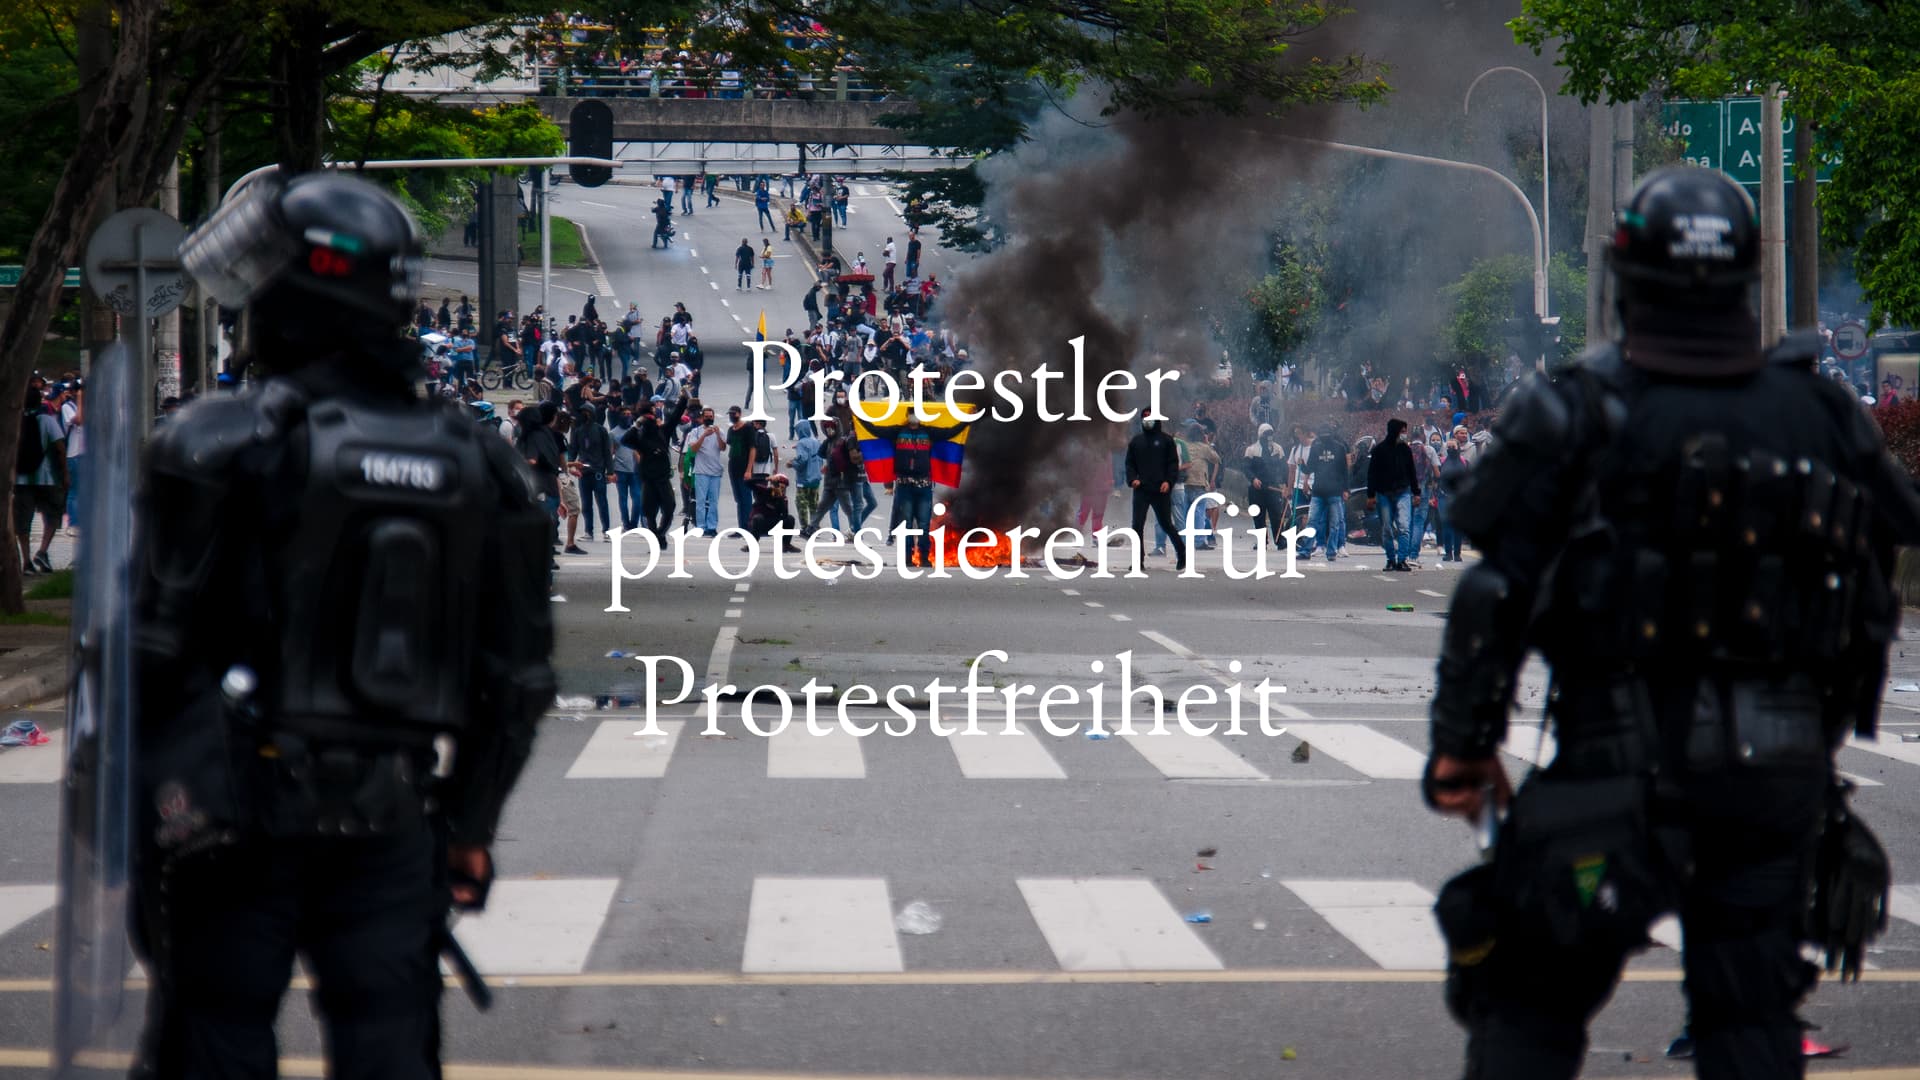 Bild für den Beitrag: Kolumbien: Protestfreiheit